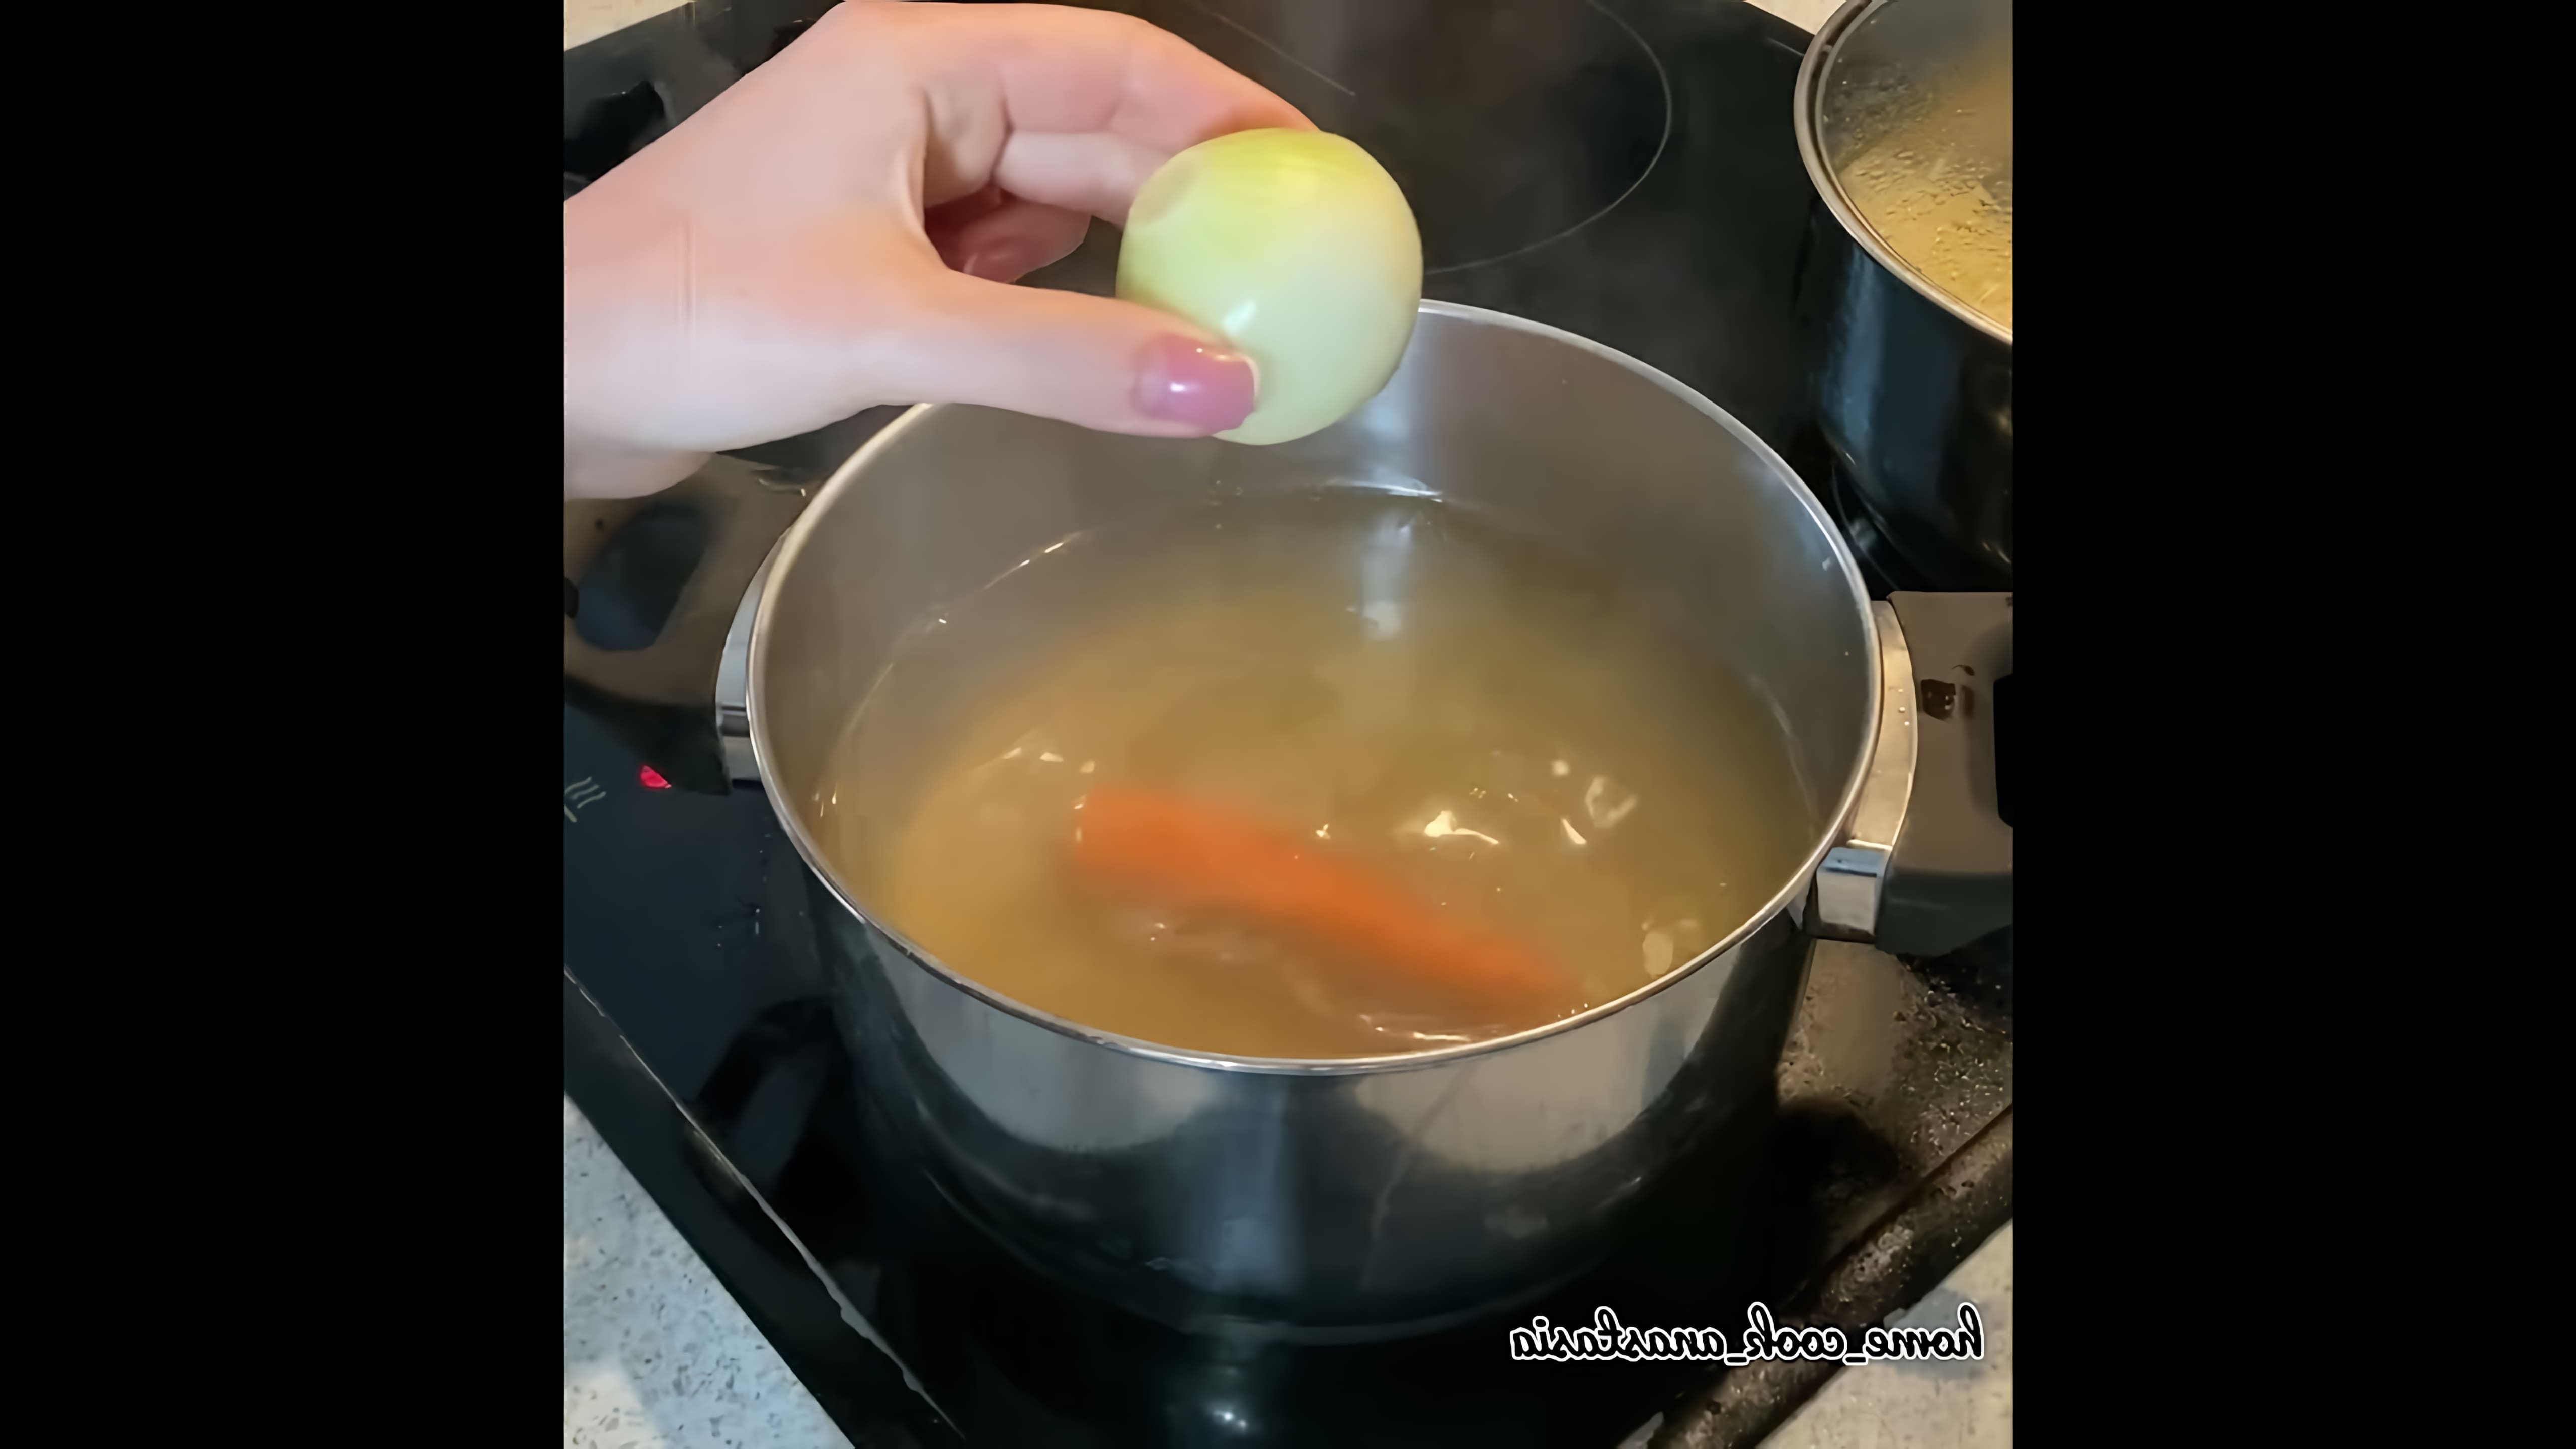 В этом видео демонстрируется процесс приготовления говяжьего супа с соевым соусом